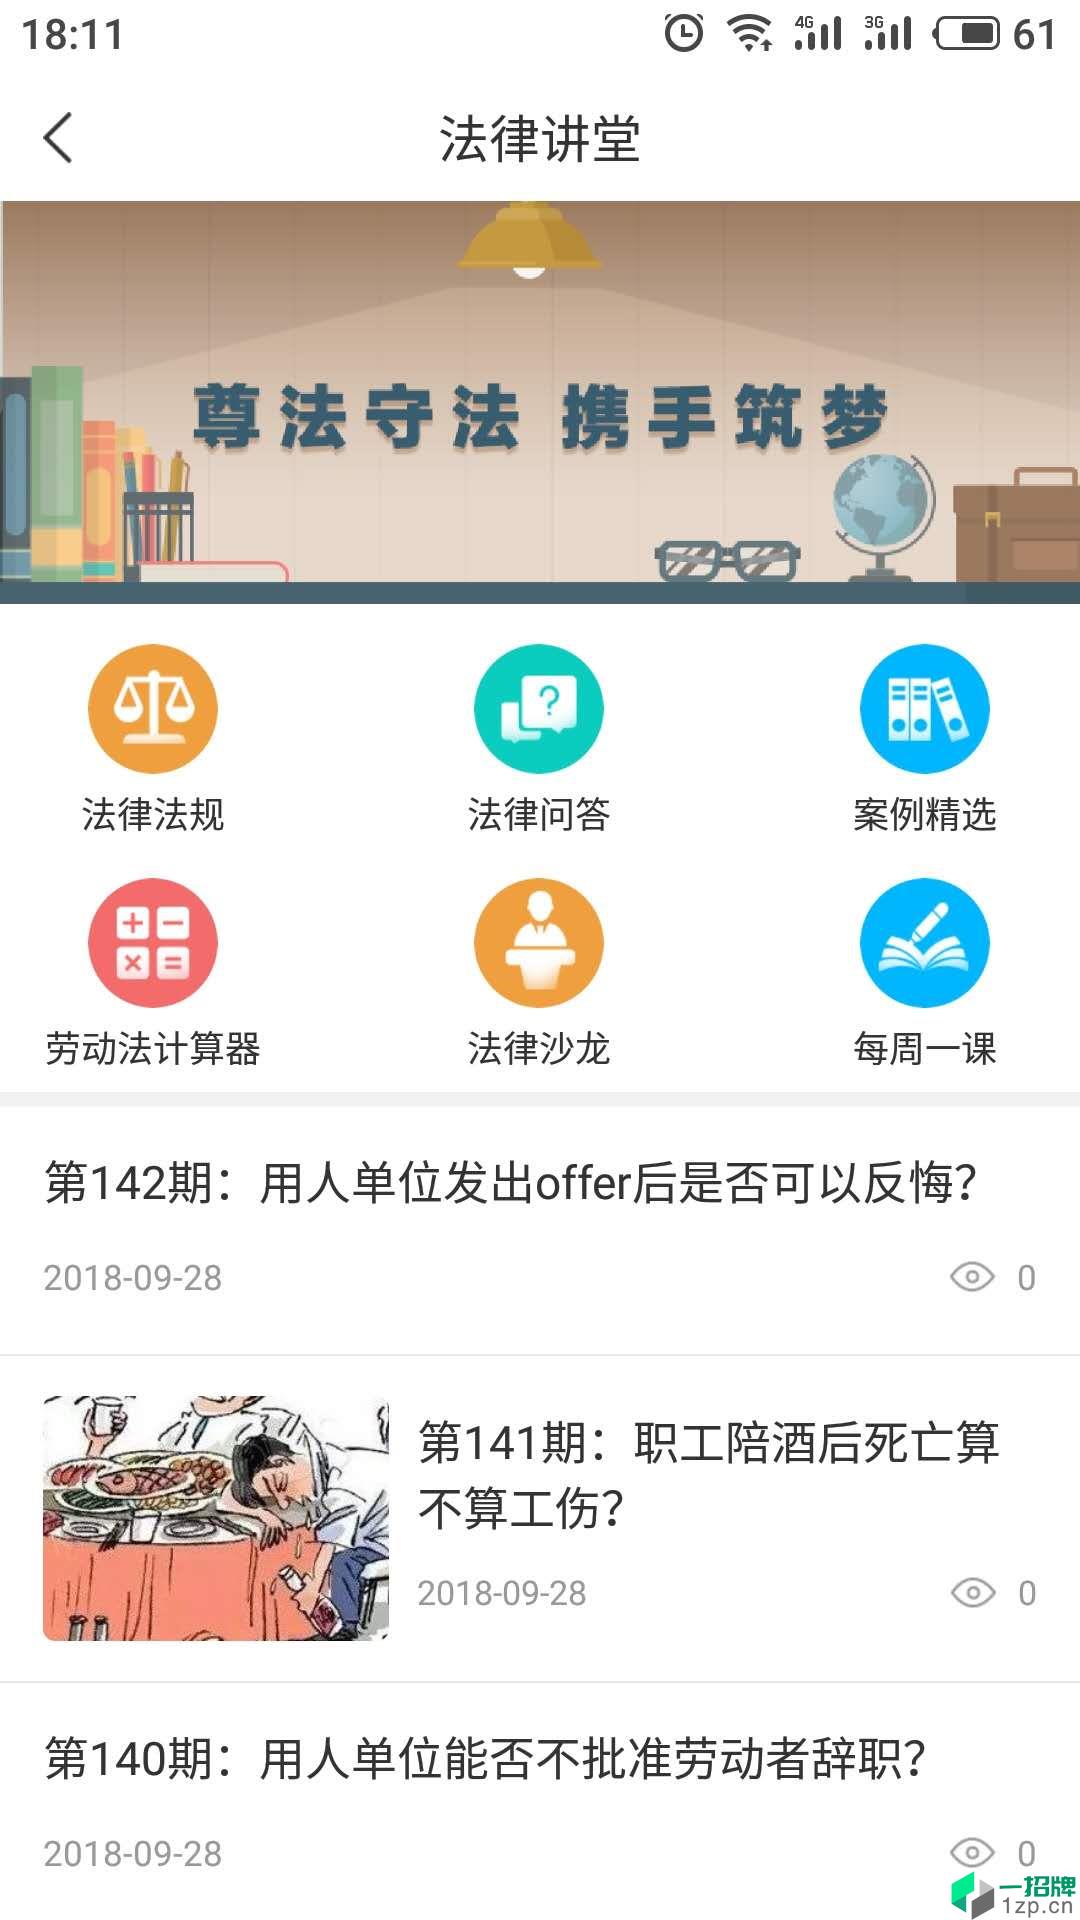 海南工会云1.4.1版app安卓版下载_海南工会云1.4.1版app安卓软件应用下载